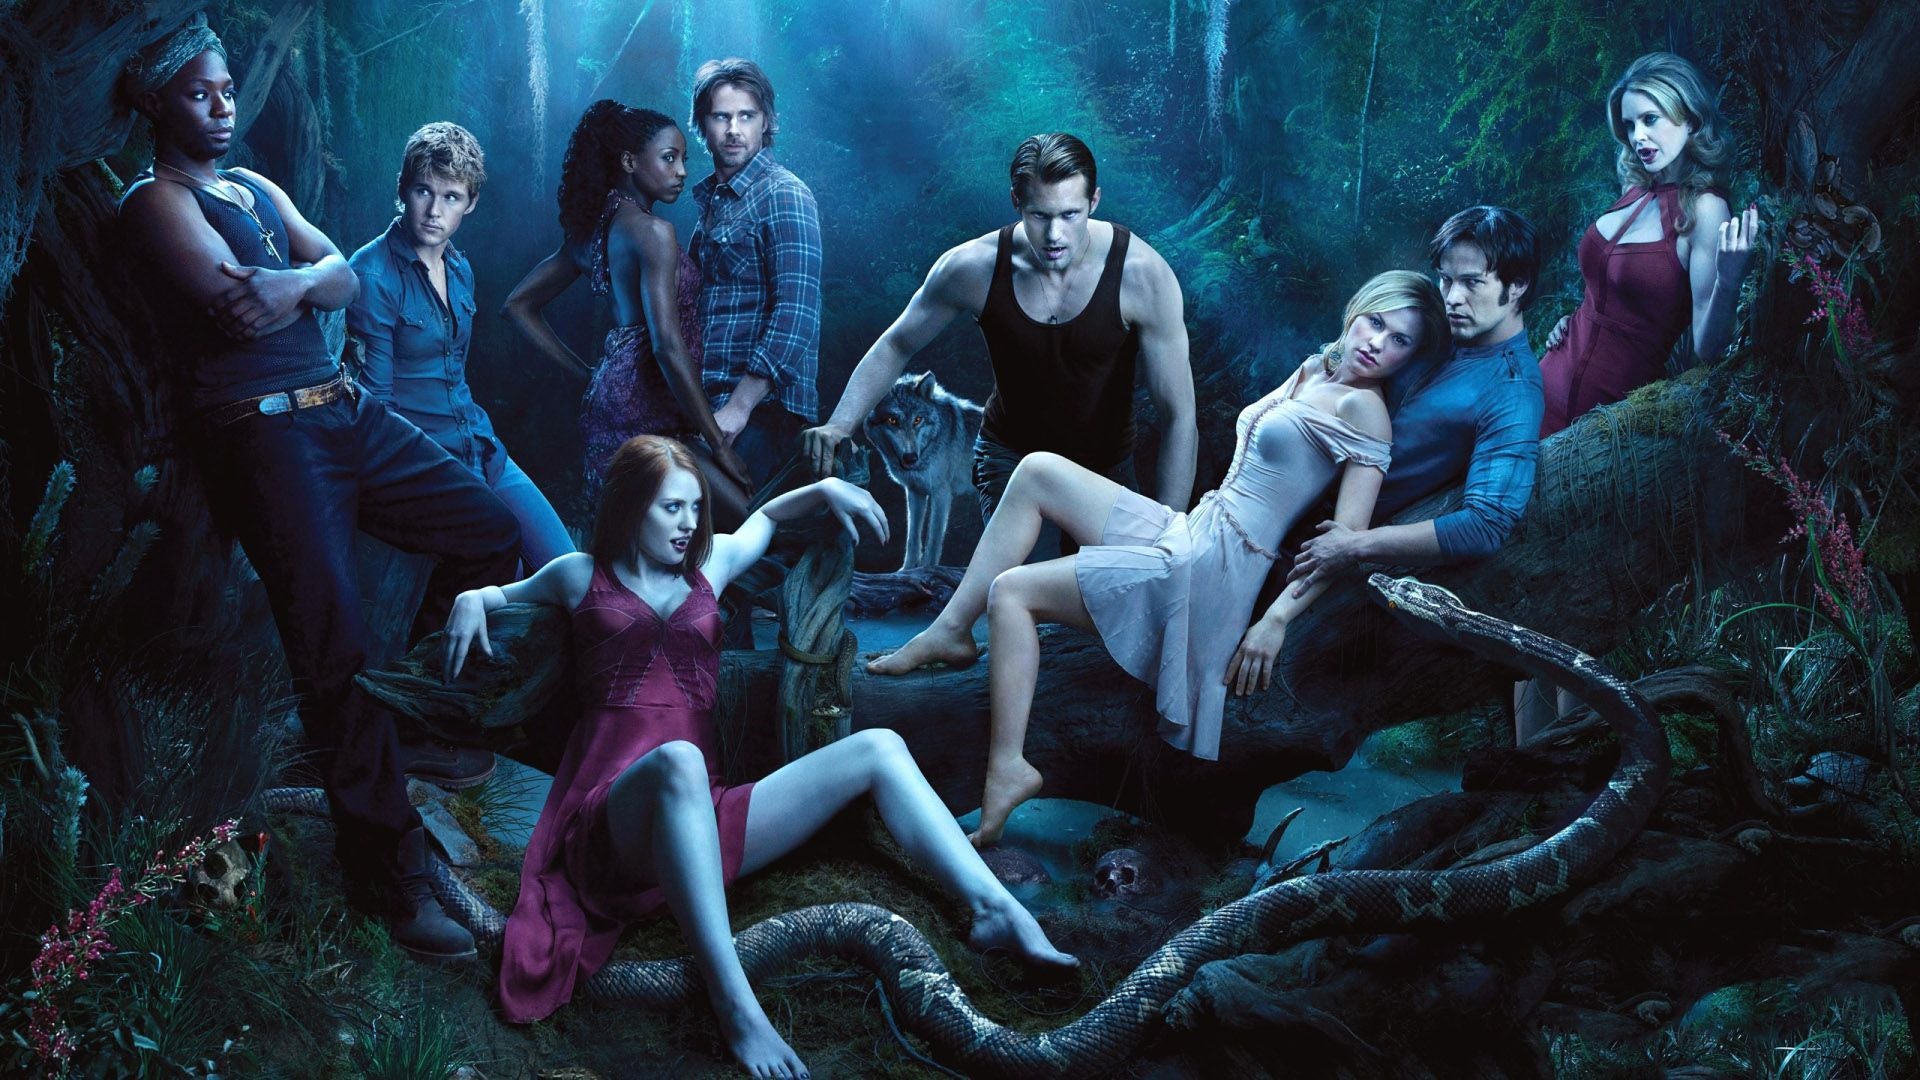 True Blood: The Complete Series - Seasons 1-7